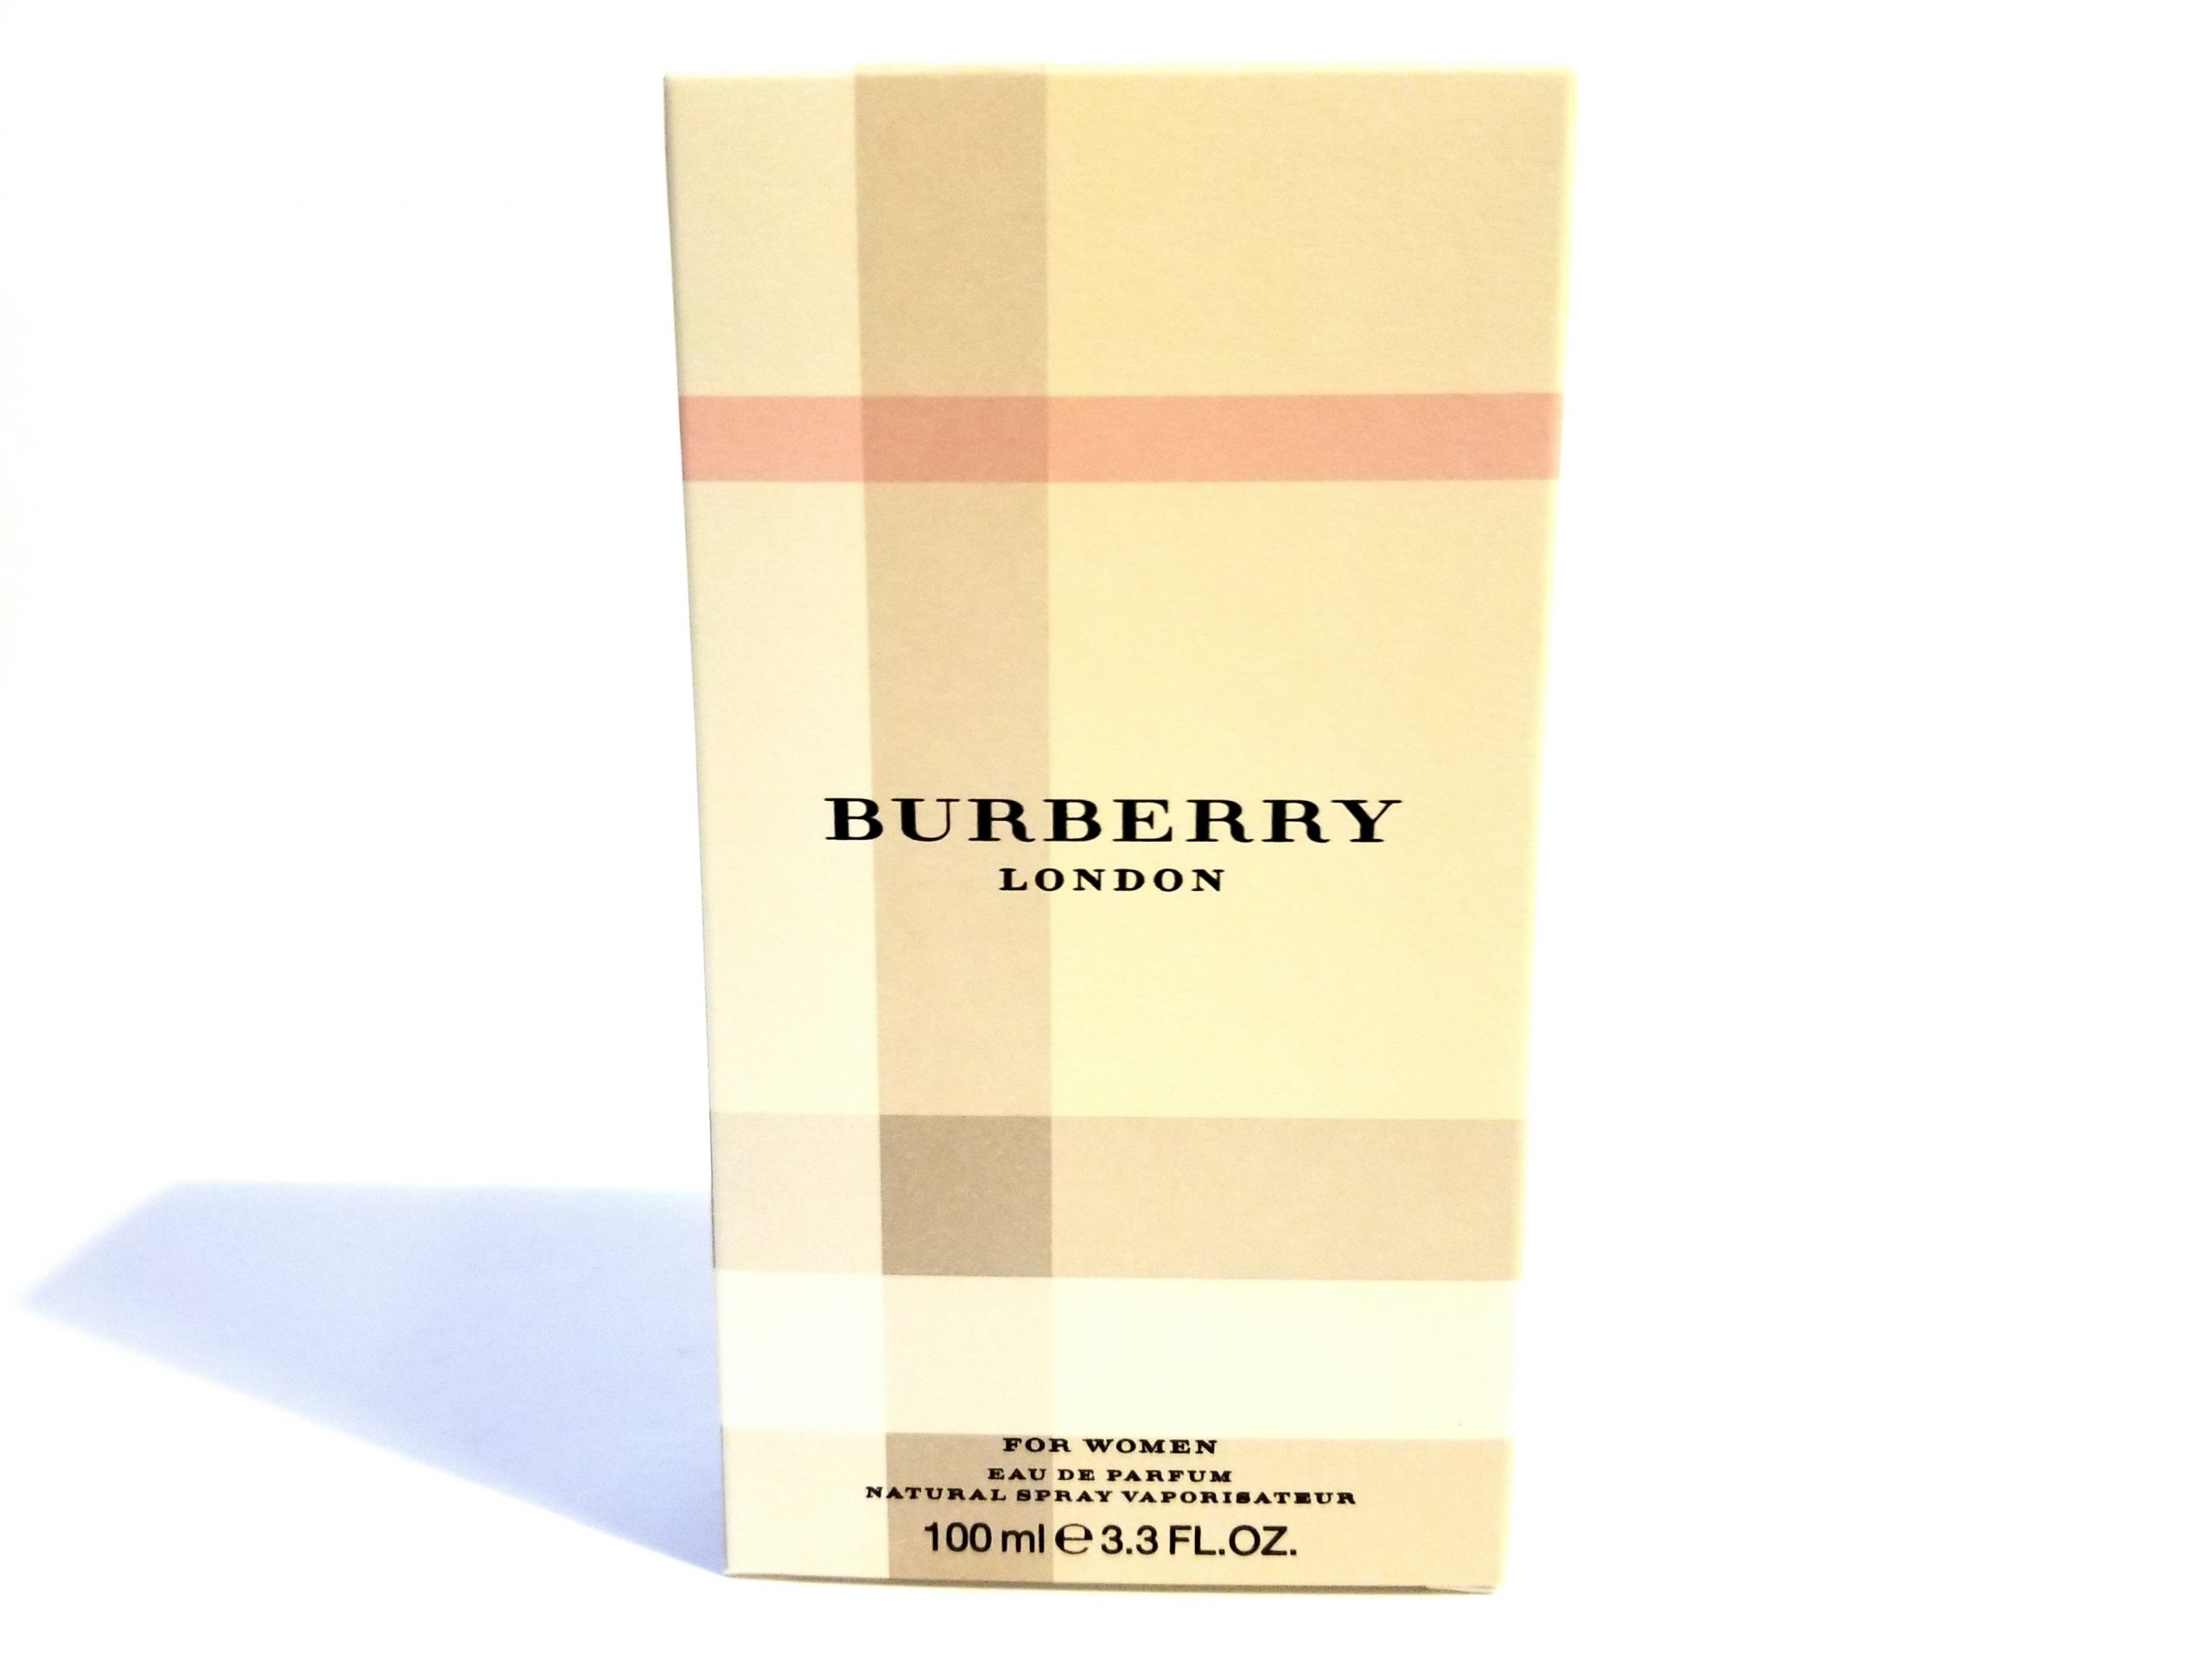 Burberry London Eau de Parfum for Women